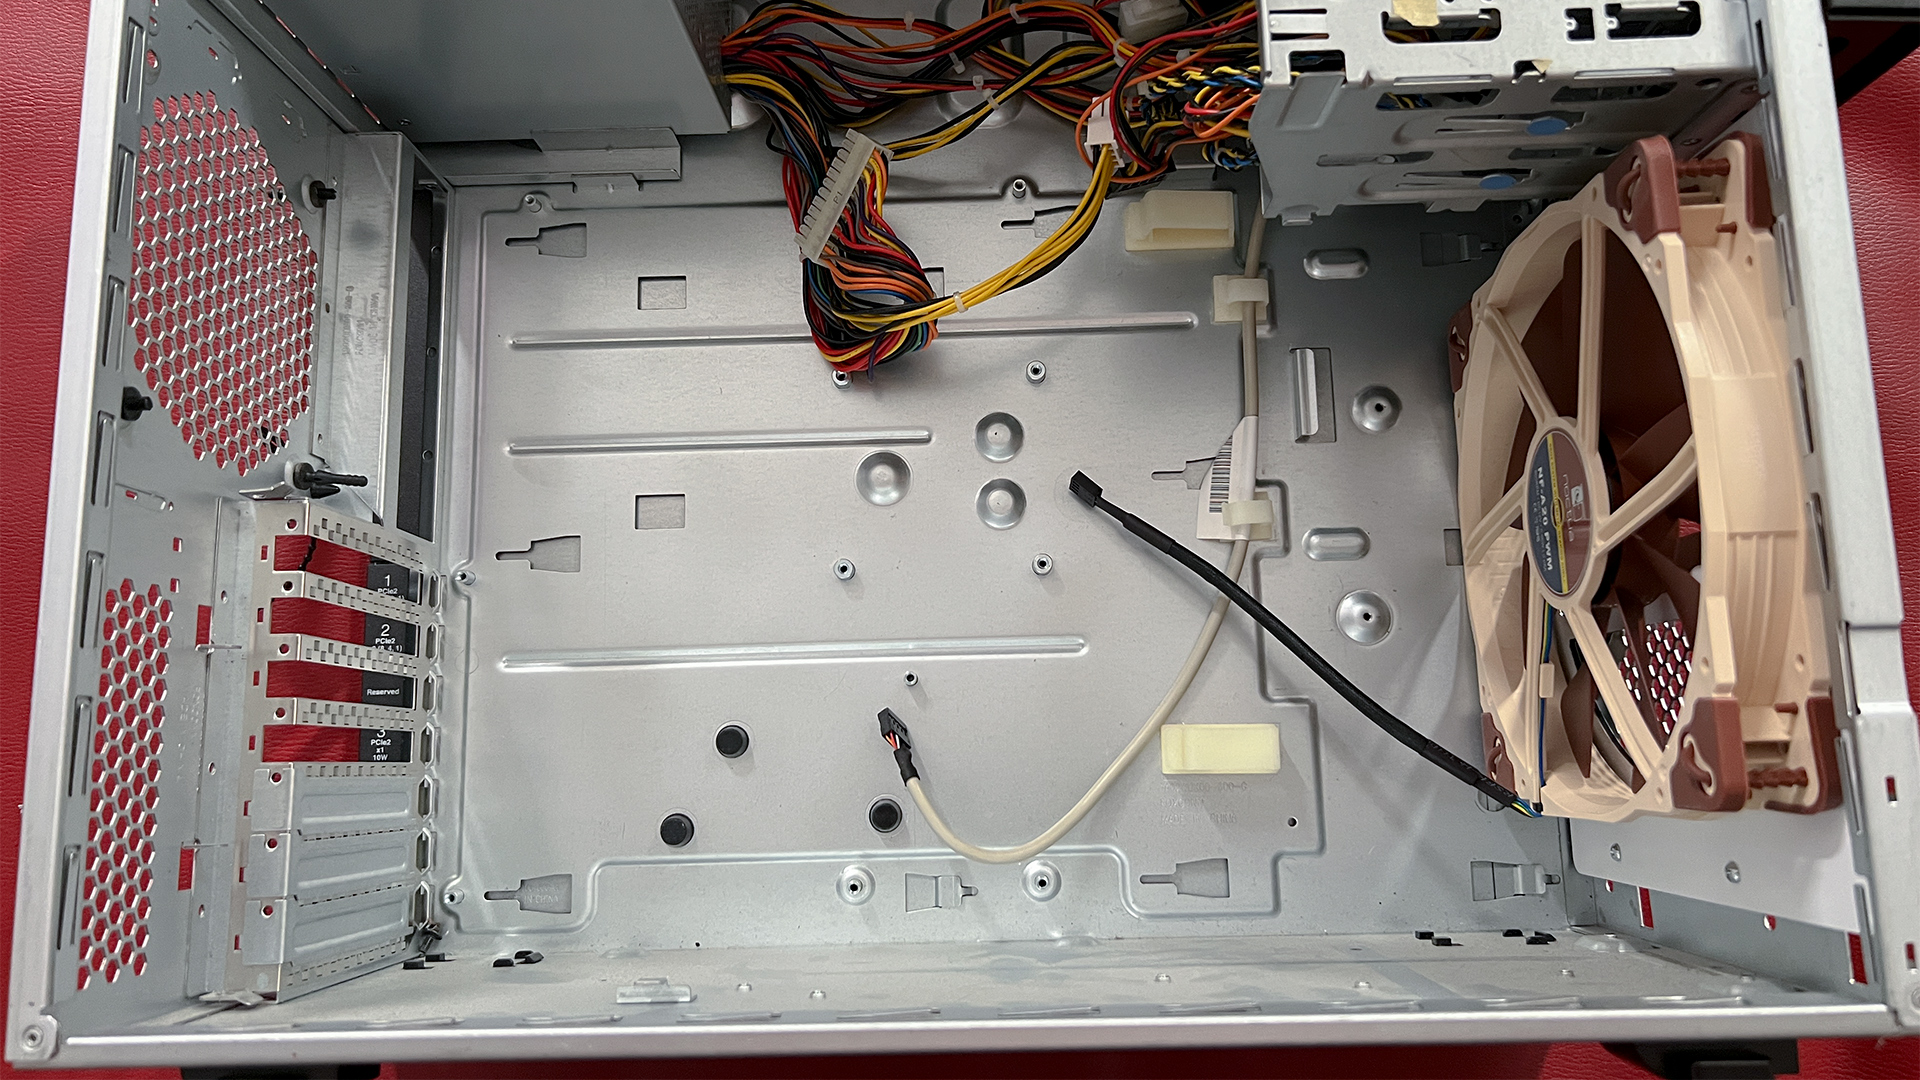 Noctua A20 fan mounted inside of the X3200 IBM case.